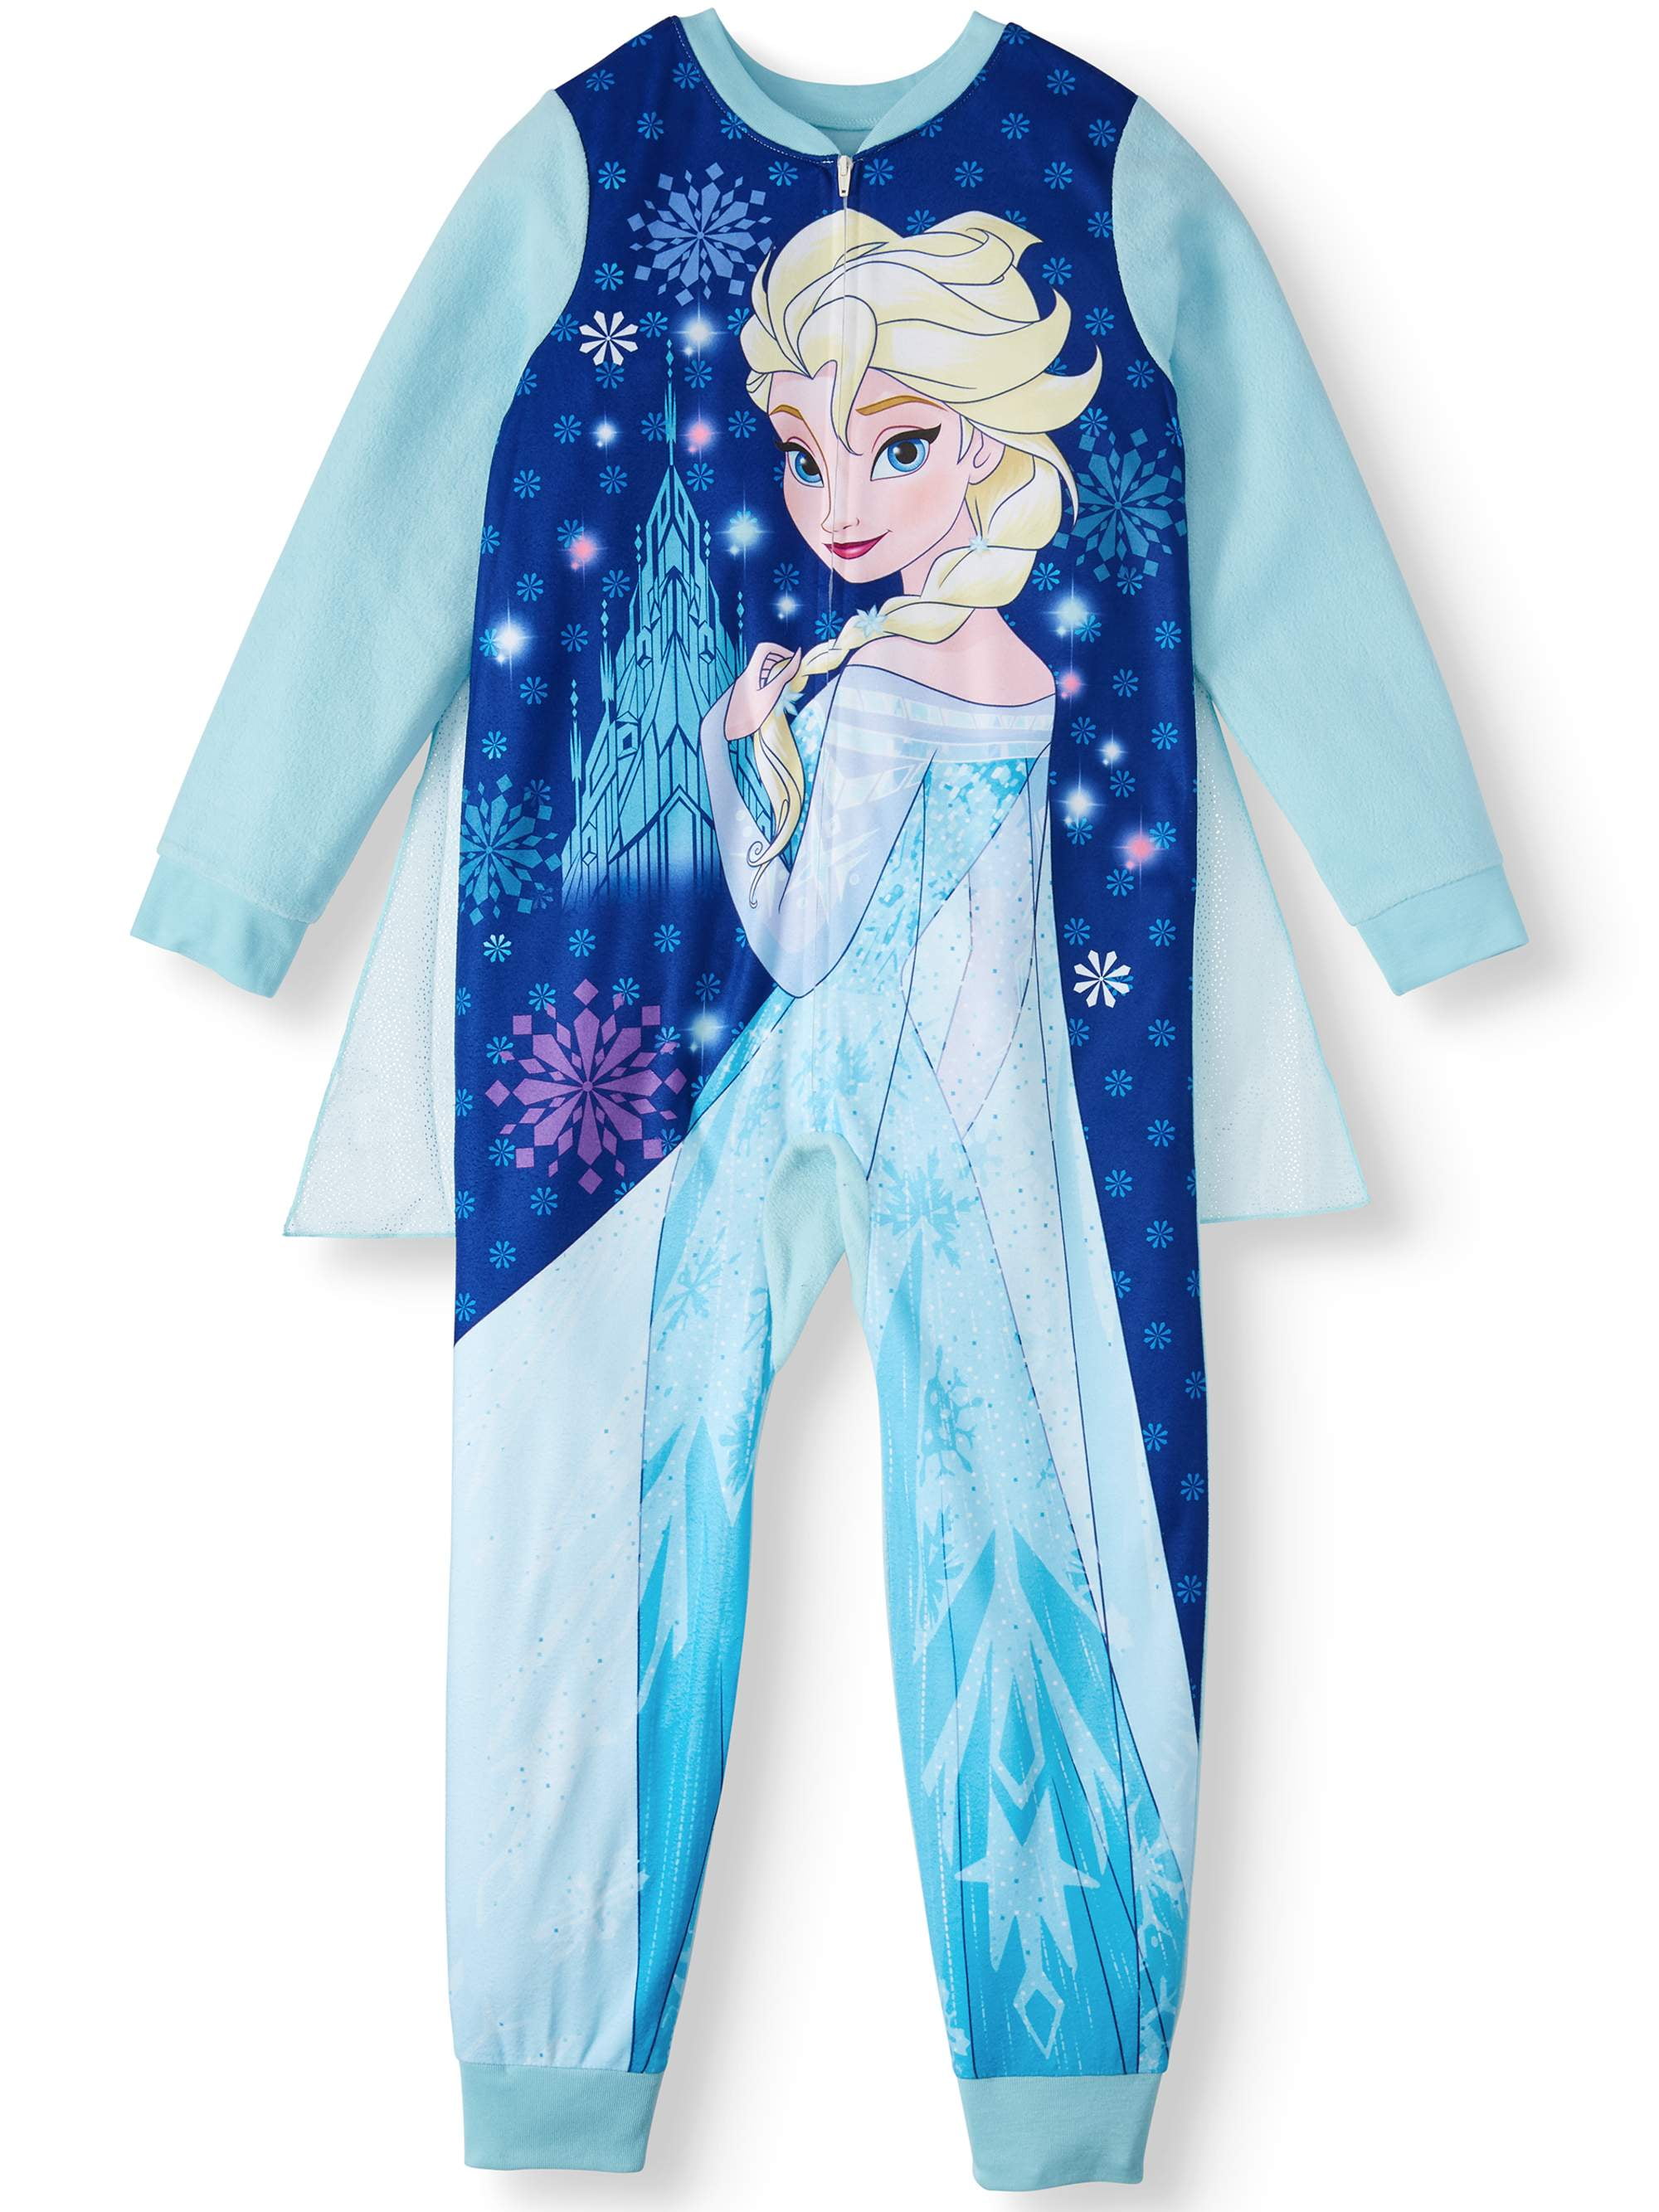 Girls Frozen Elsa Robe Kids Pj's Fleece 6-7 years nightwear